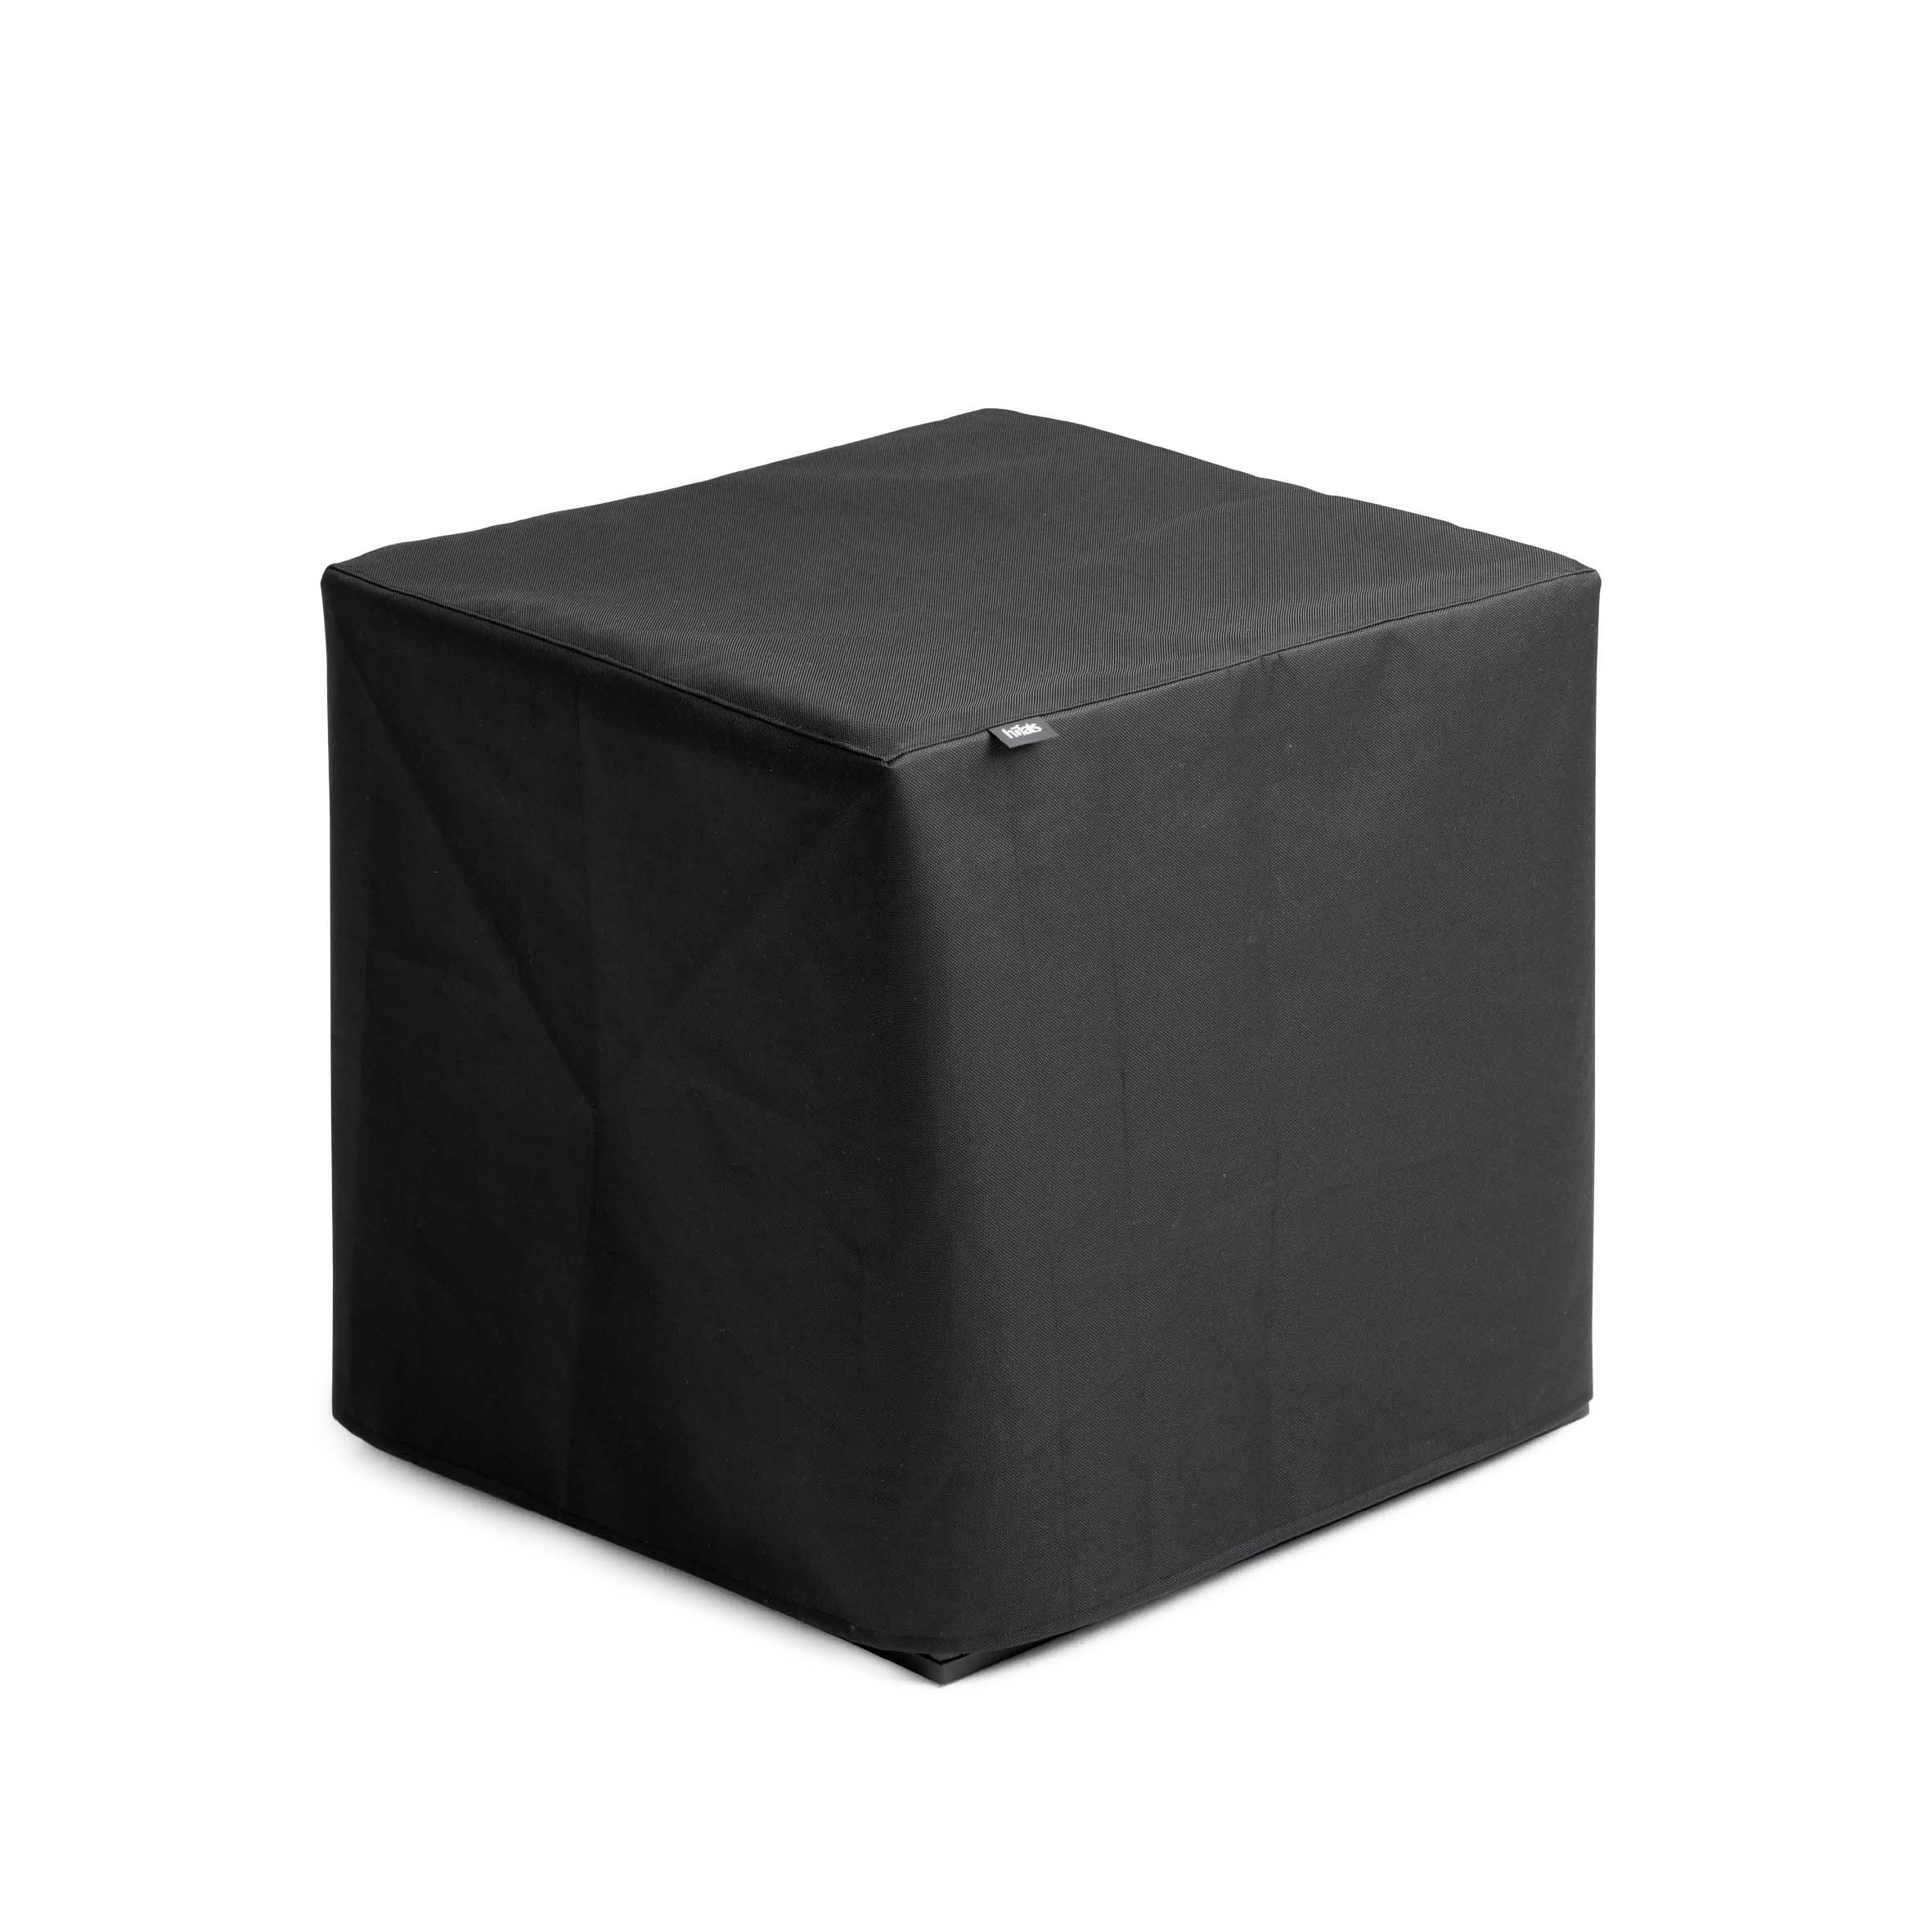 HÖFATS Feuerkorb Cube 